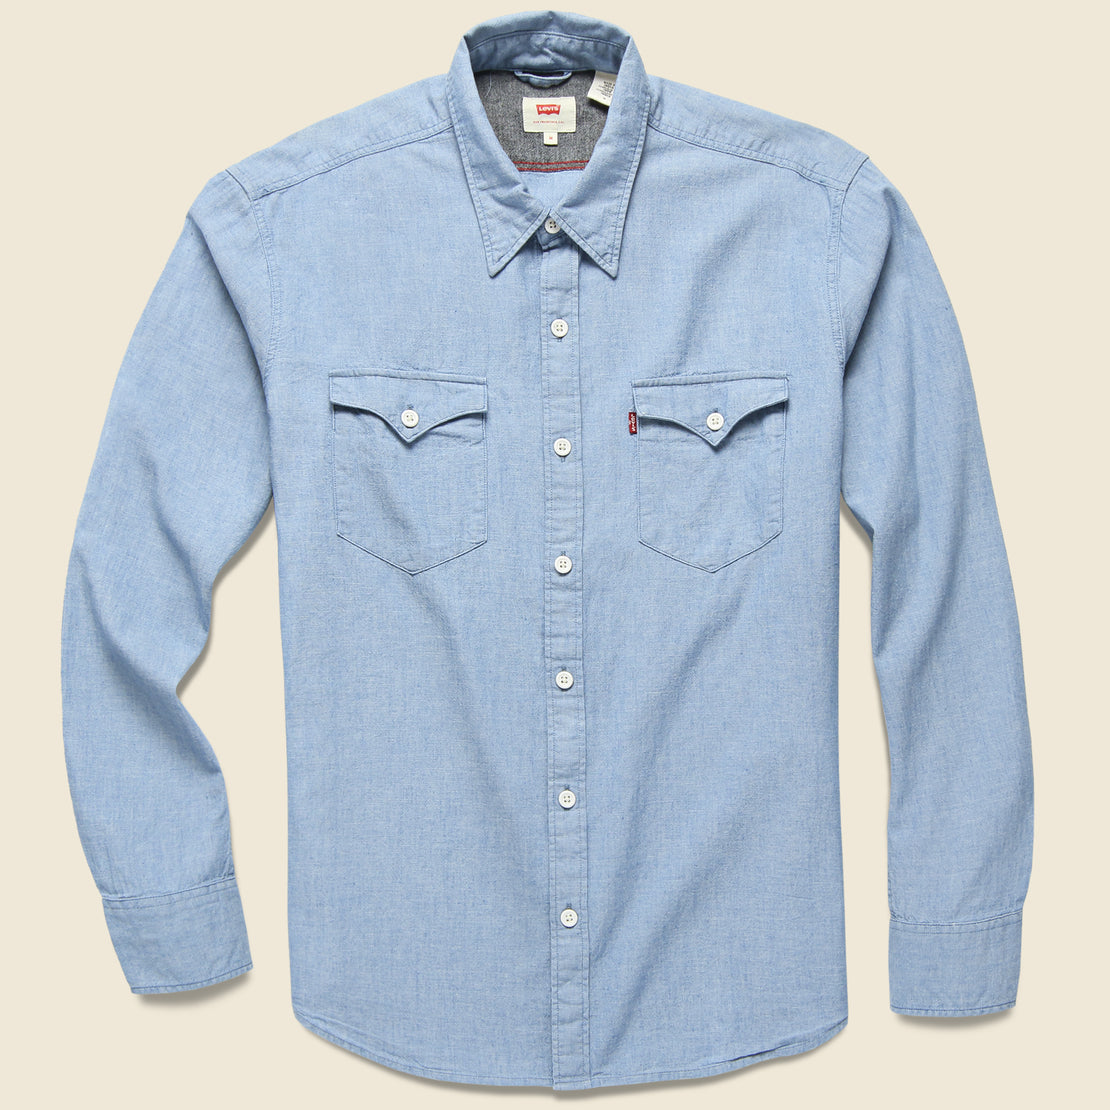 Levis Premium Modern Barstow Western Shirt - Light Indigo